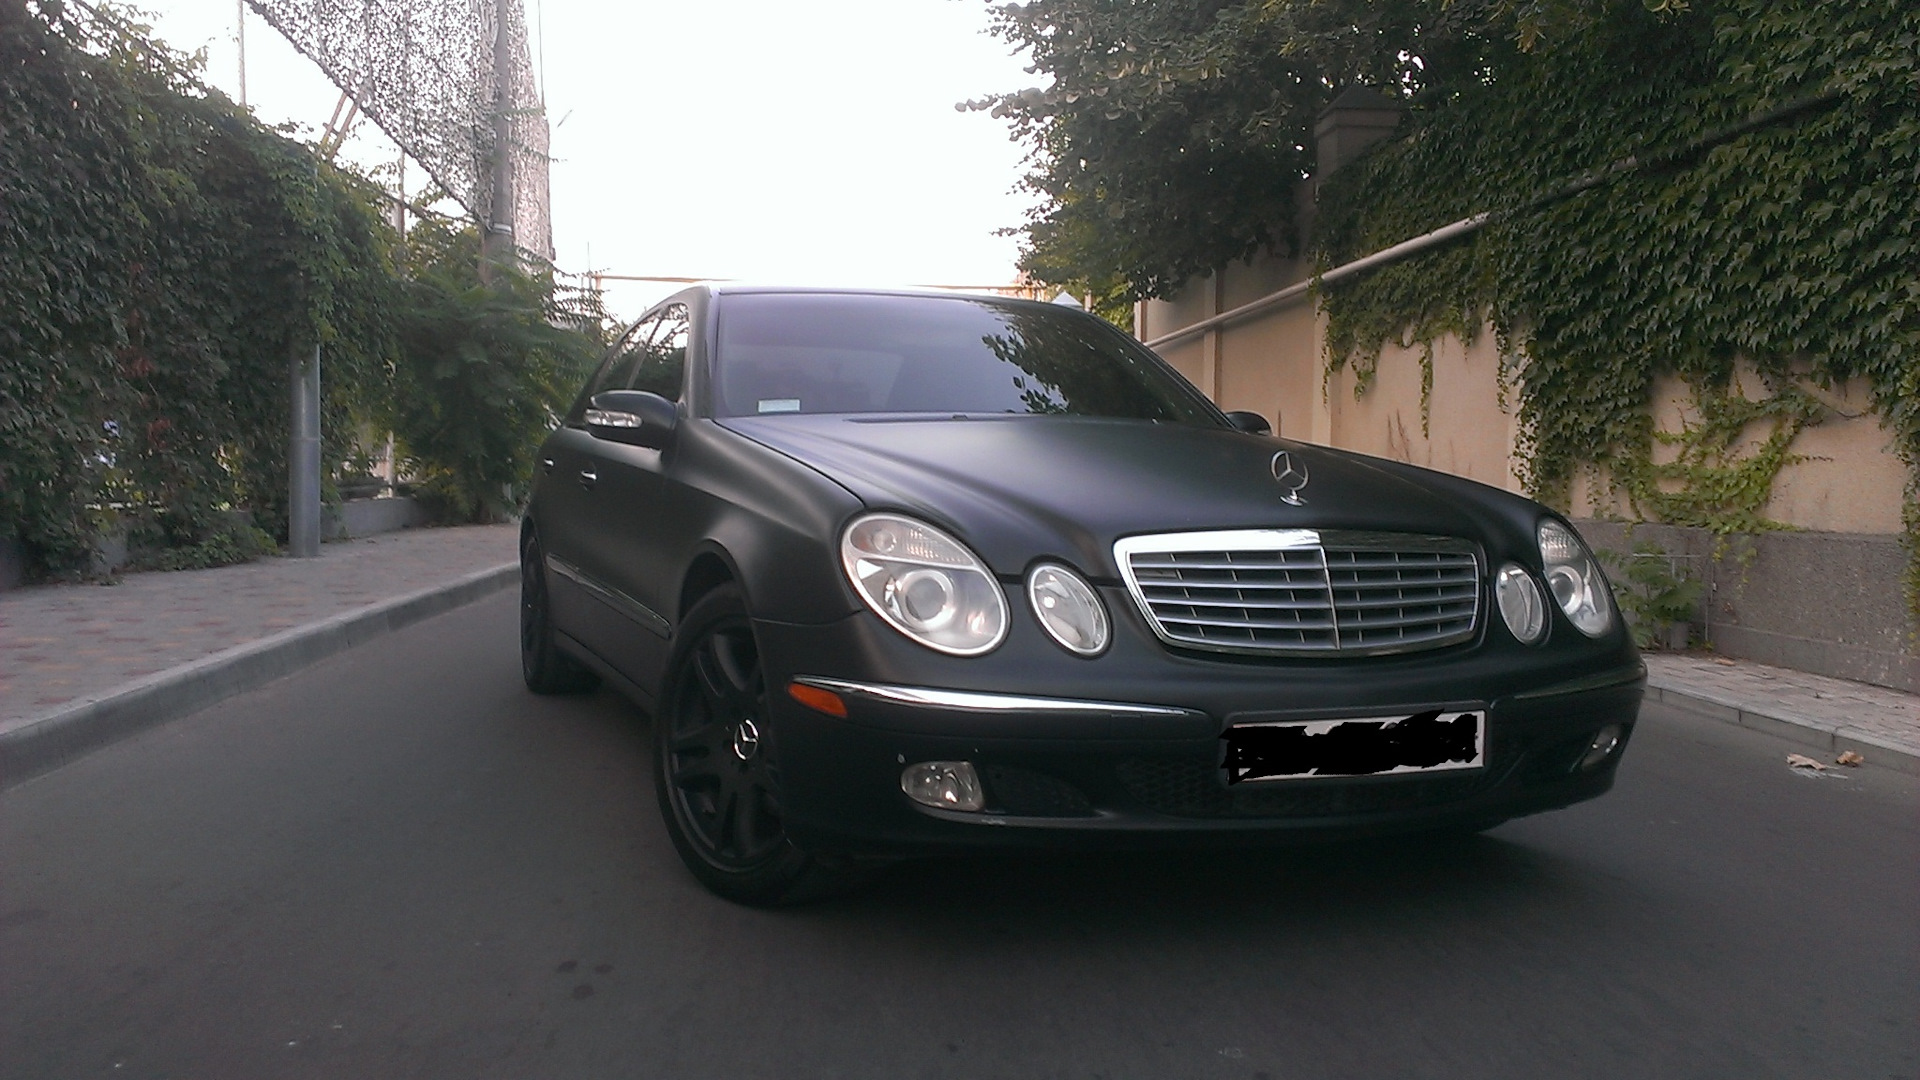 Mersedes e 500 2003. Купить авто в Азербайджане с пробегом Мерседес е класса 2010 г в.